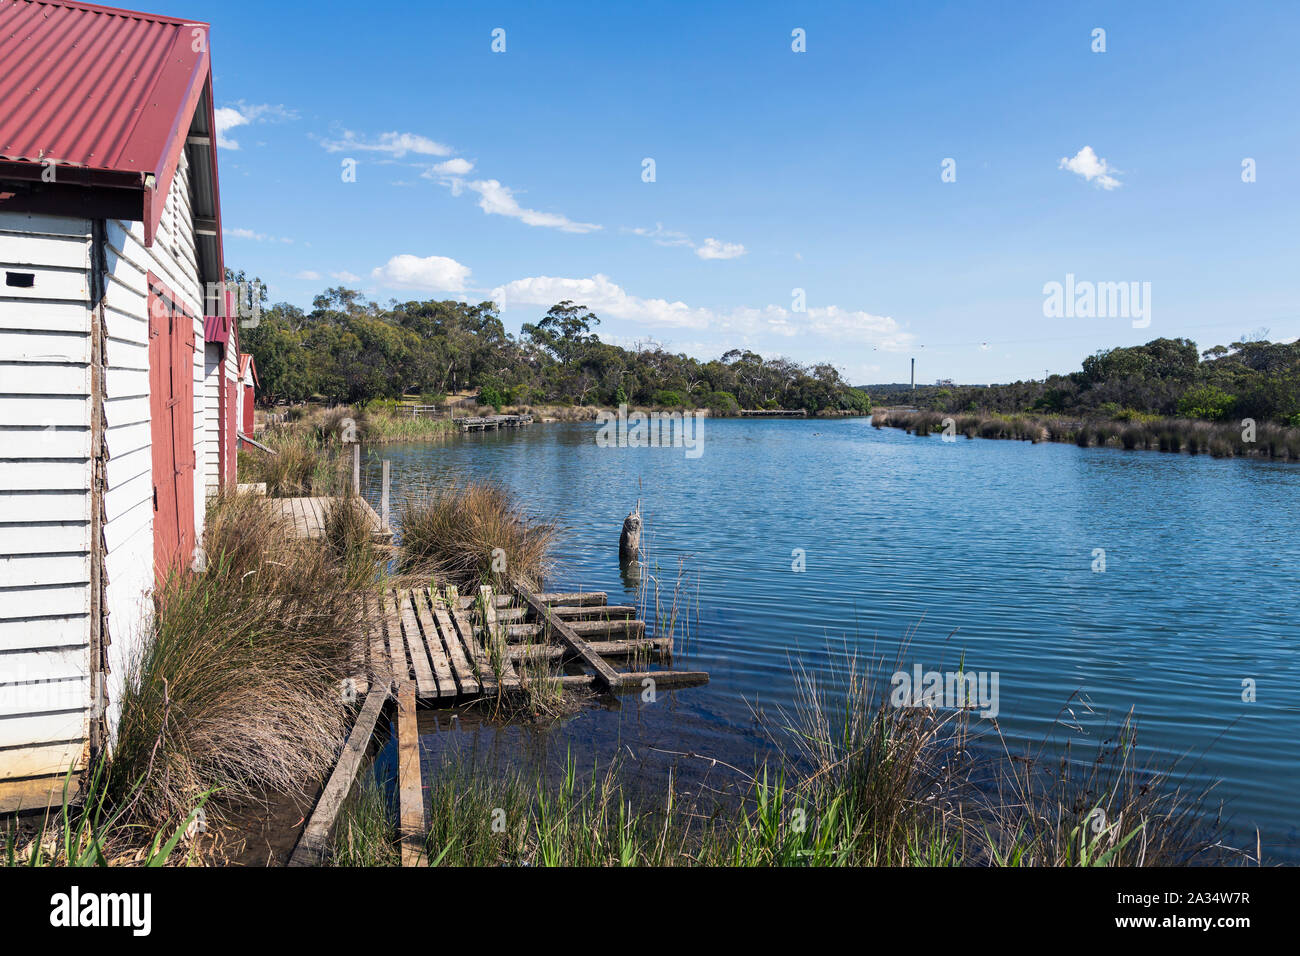 Barca case e vecchie banchine sul fiume Anglesea, Anglesea, Great Ocean Road, Victoria, Australia. Foto Stock